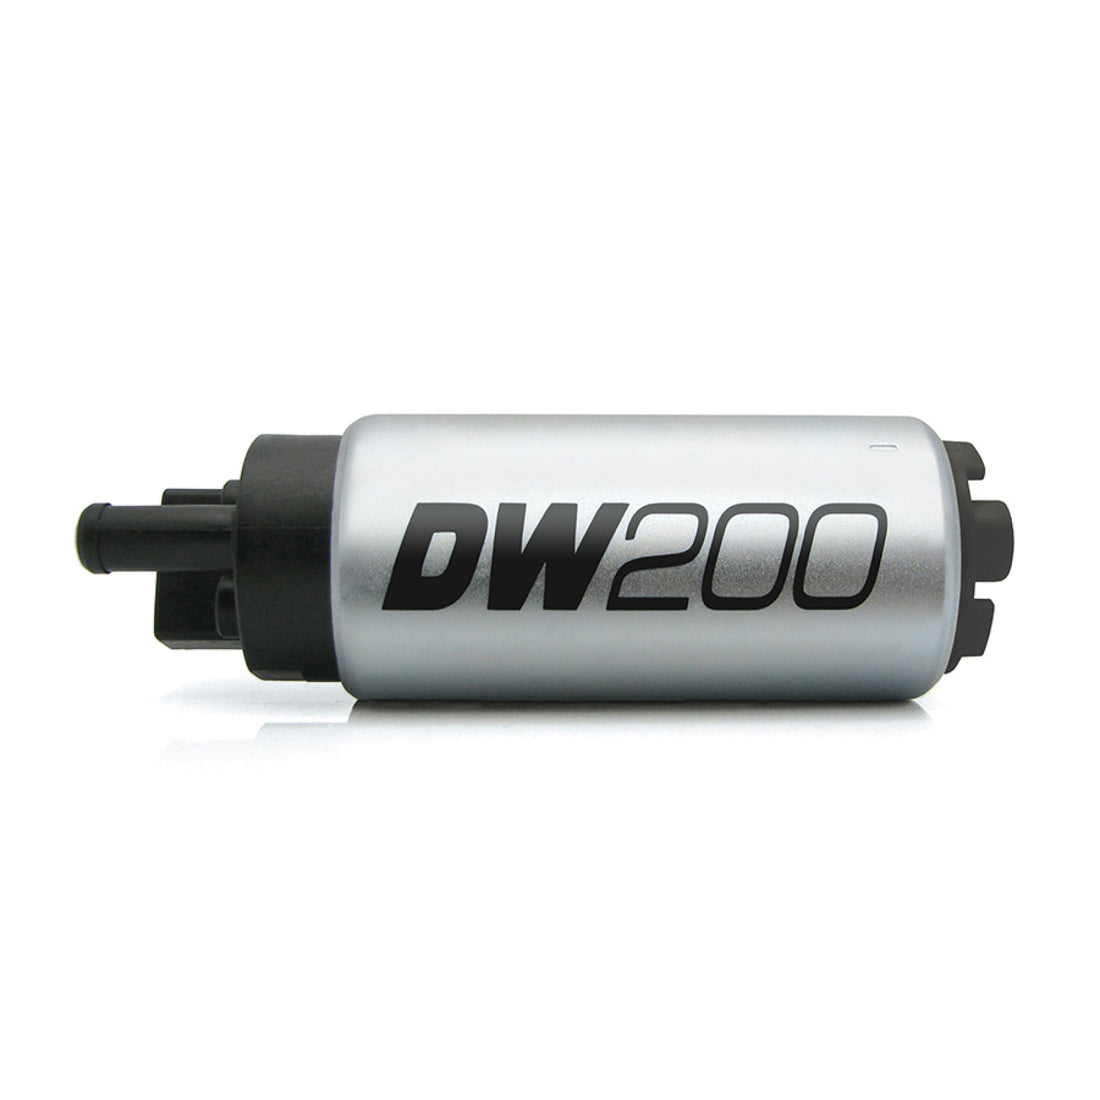 Deatschwerks DW200 255lph Fuel Pump for 89-94 Nissan 240sx and 91-01 Infiniti Q45